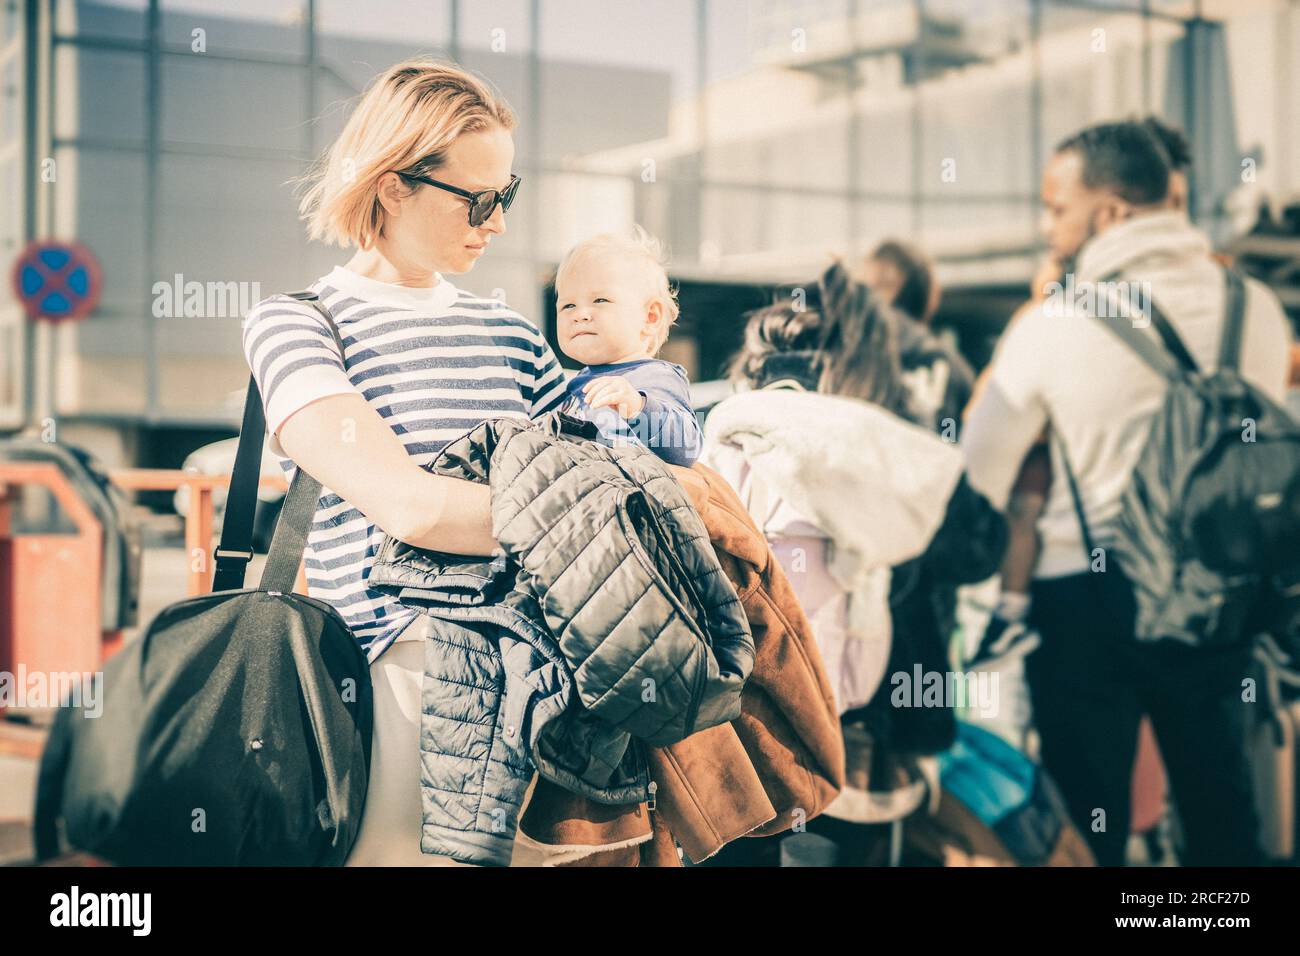 Der Mutter, die mit seinem kleinen Jungen reist. Mutter hielt Reisetasche und ihr kleines Kind, während sie sich vor dem Flughafen in der Schlange für den Bus anstellte Stockfoto